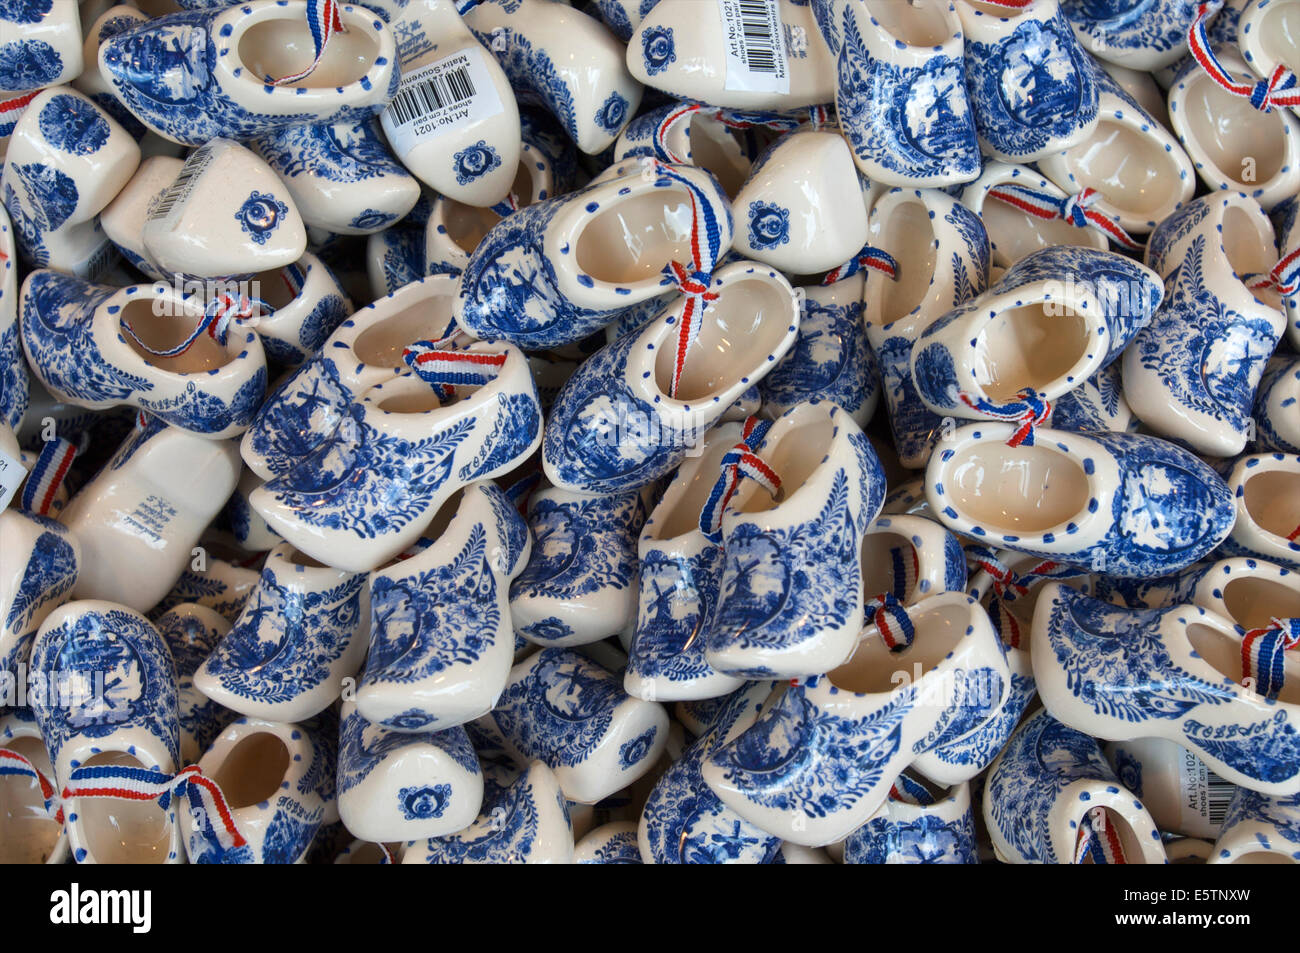 Ein Korb mit Keramik Delfter Blau Holzschuhe als Souvenirs in einem Geschäft in Volendam, Niederlande Stockfoto